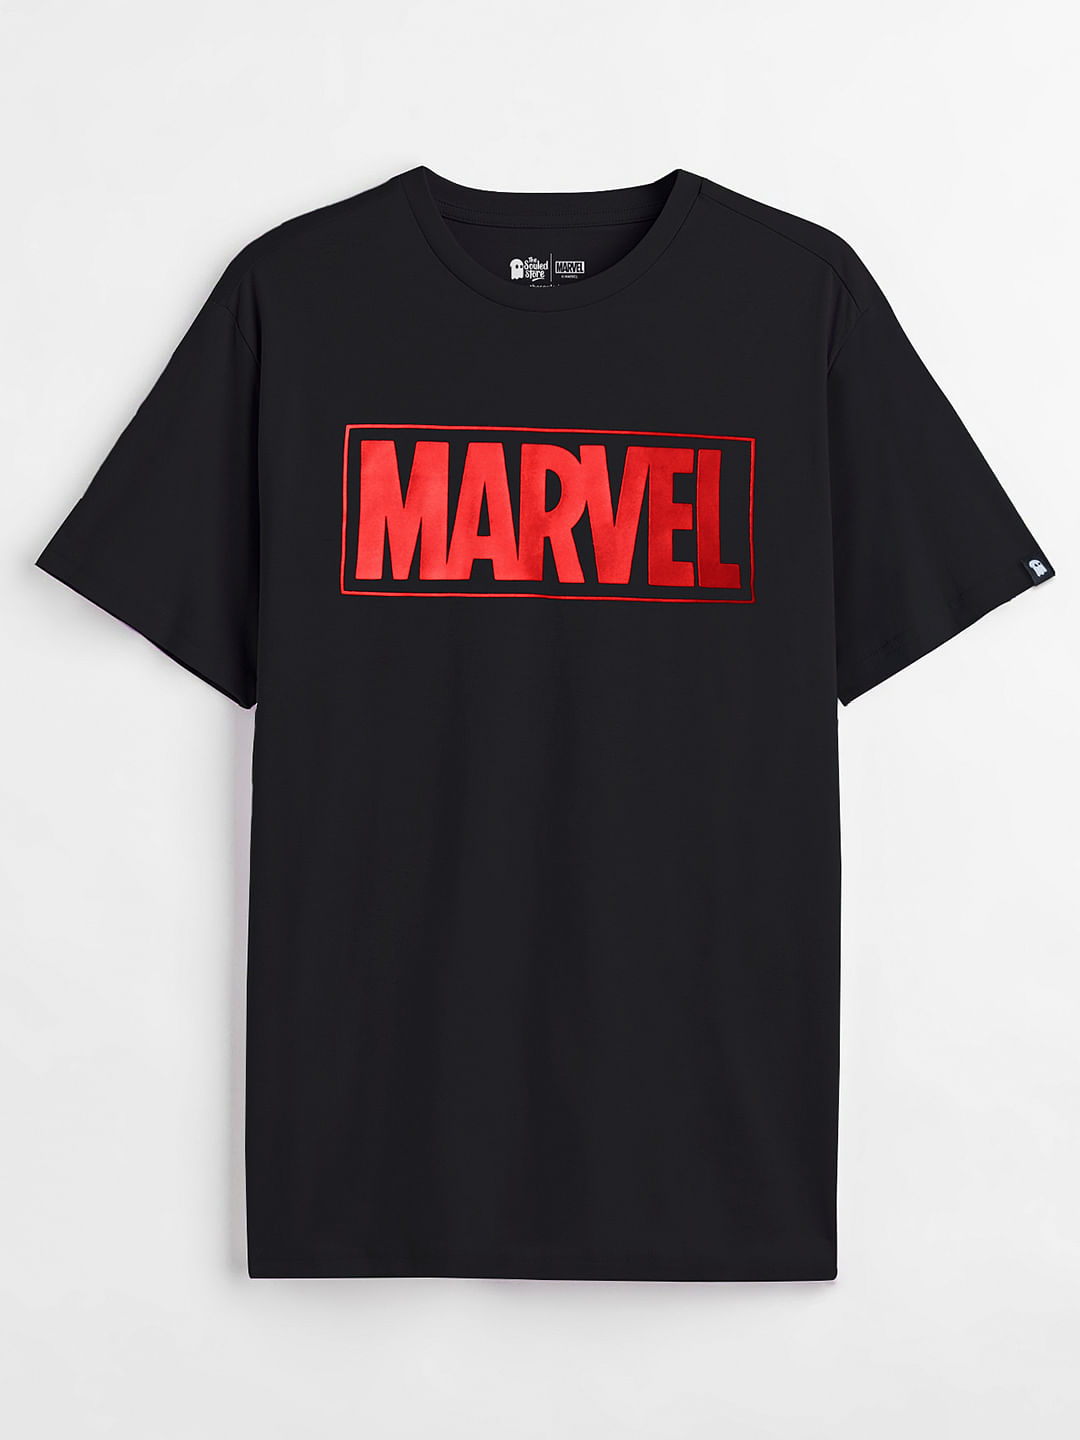 Buy Marvel: MCU Heroes Men T-shirt Set Online